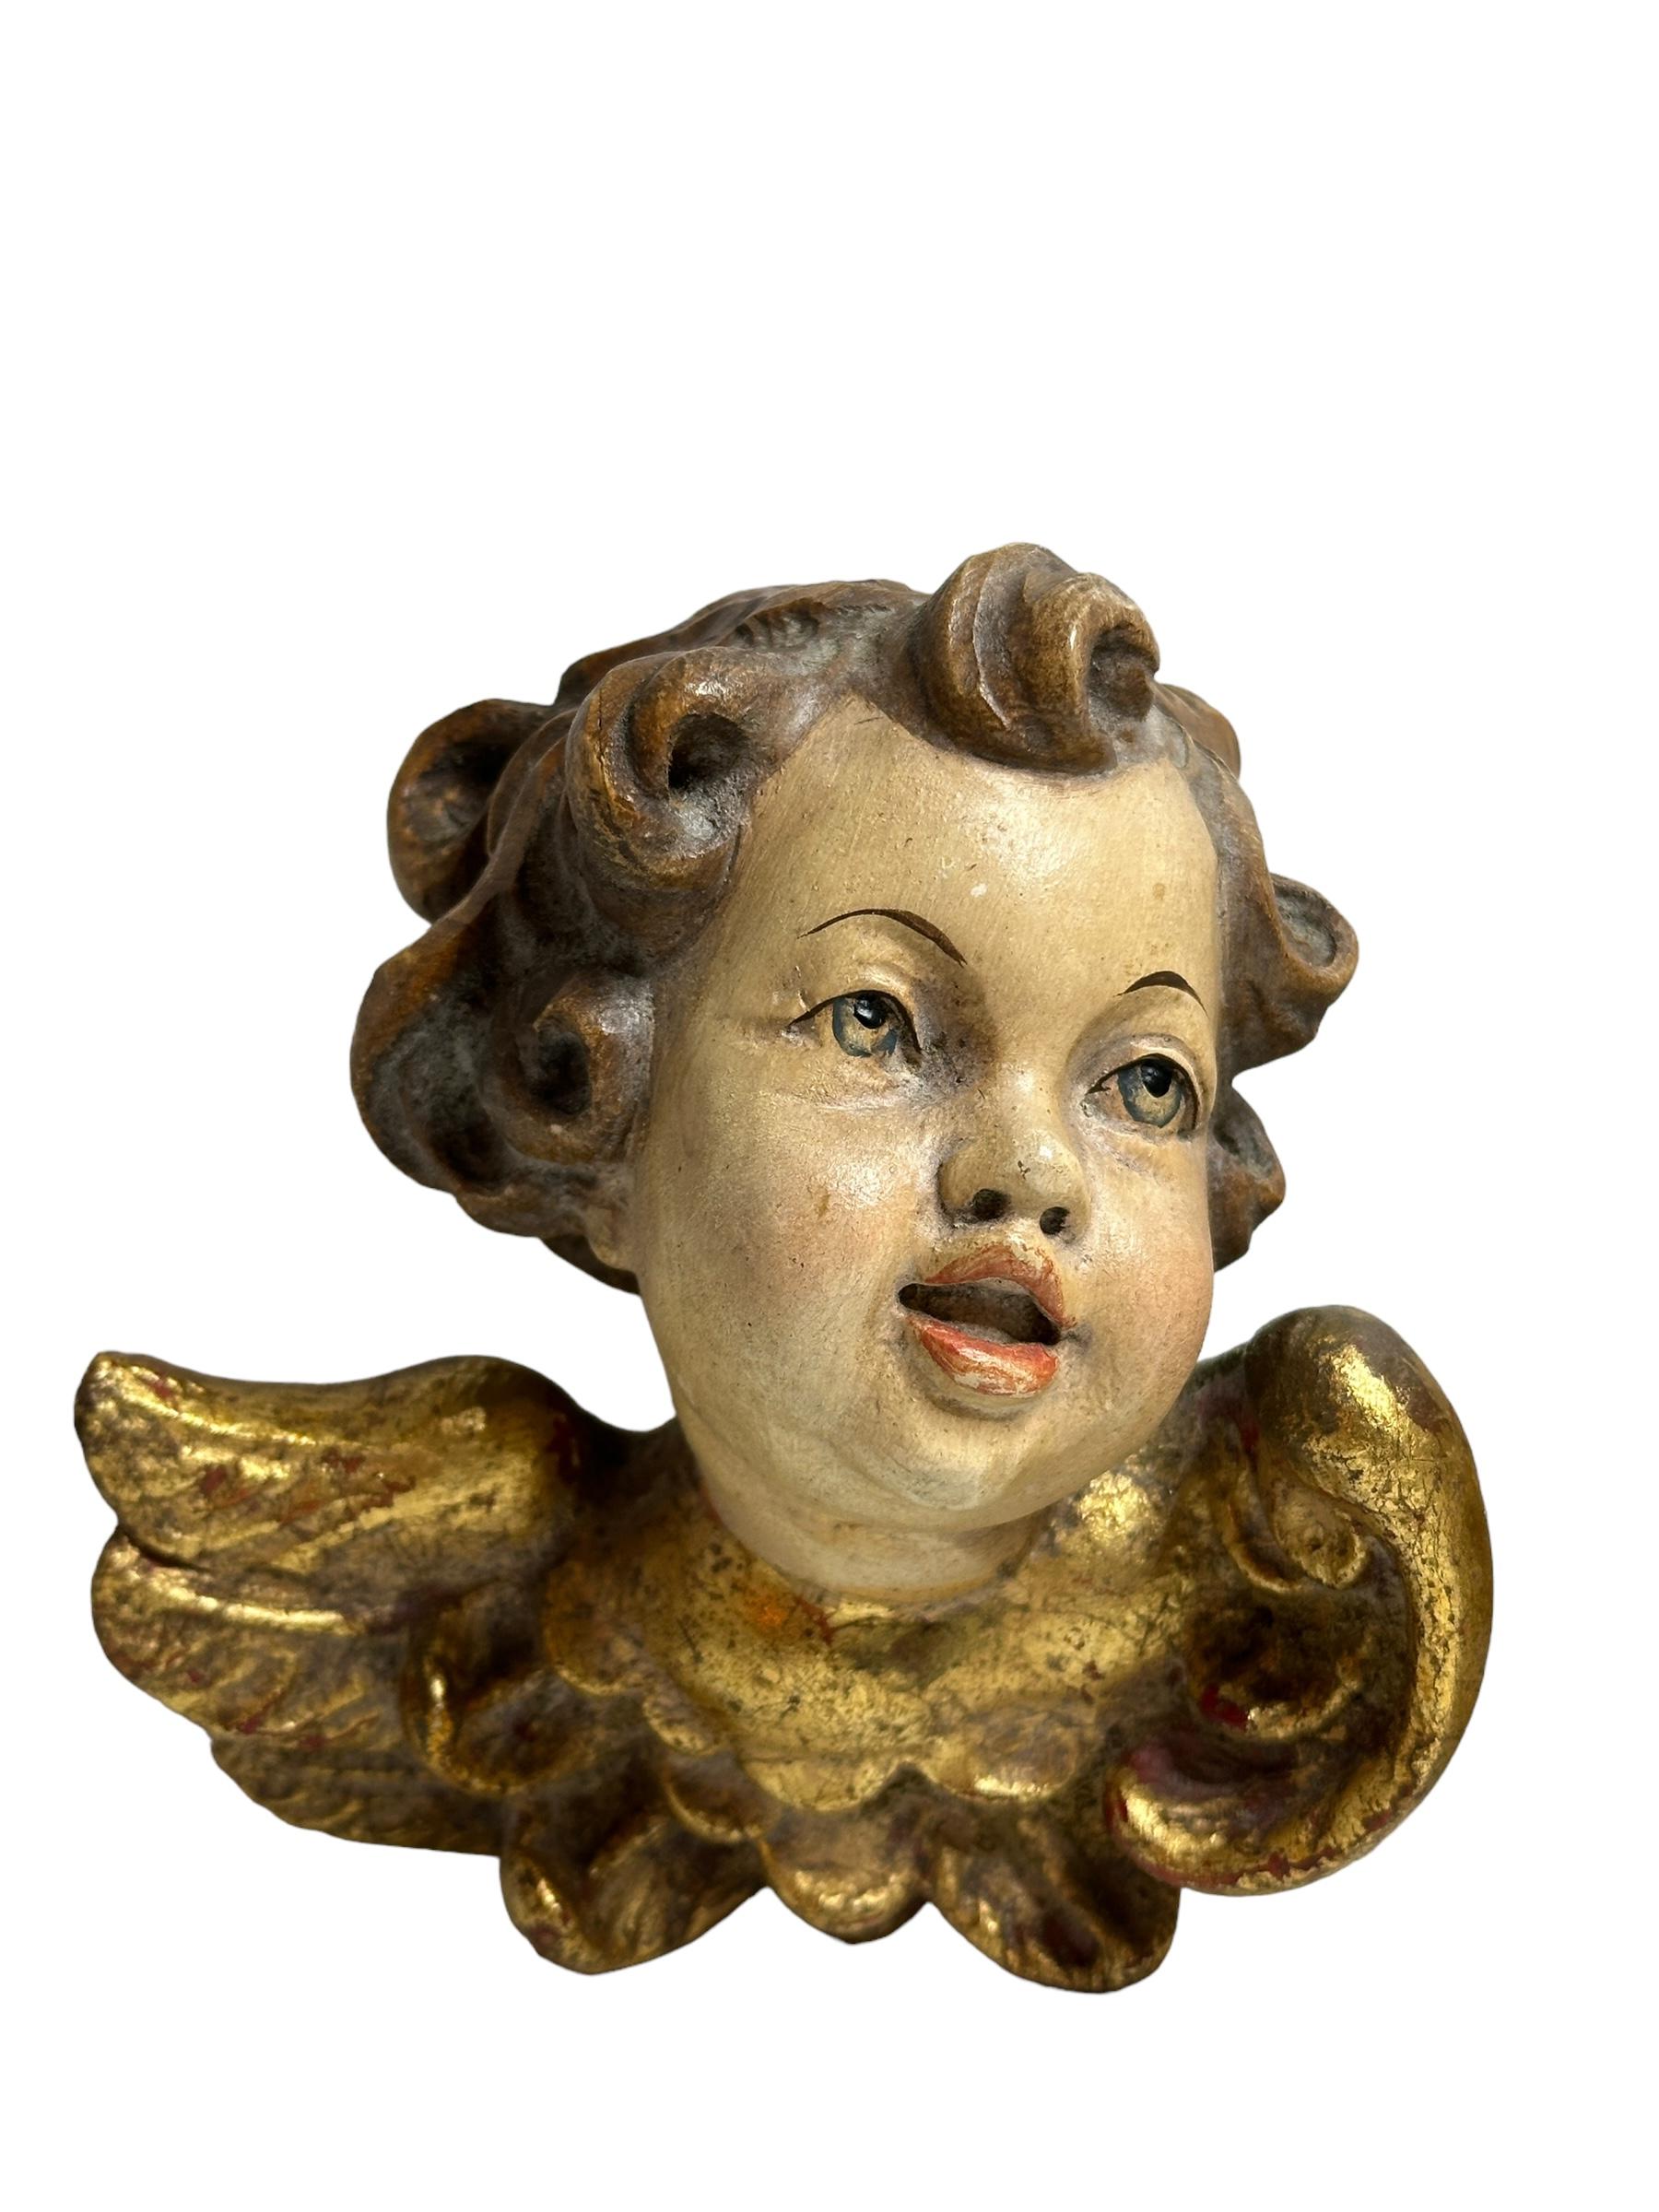 Une paire de magnifiques têtes d'ange chérubin sculptées et peintes à la main, trouvées lors d'une vente immobilière en Allemagne. Fabriqué par un sculpteur sur bois de la région d'Oberammergau, cette région est réputée pour ses sculptures sur bois.